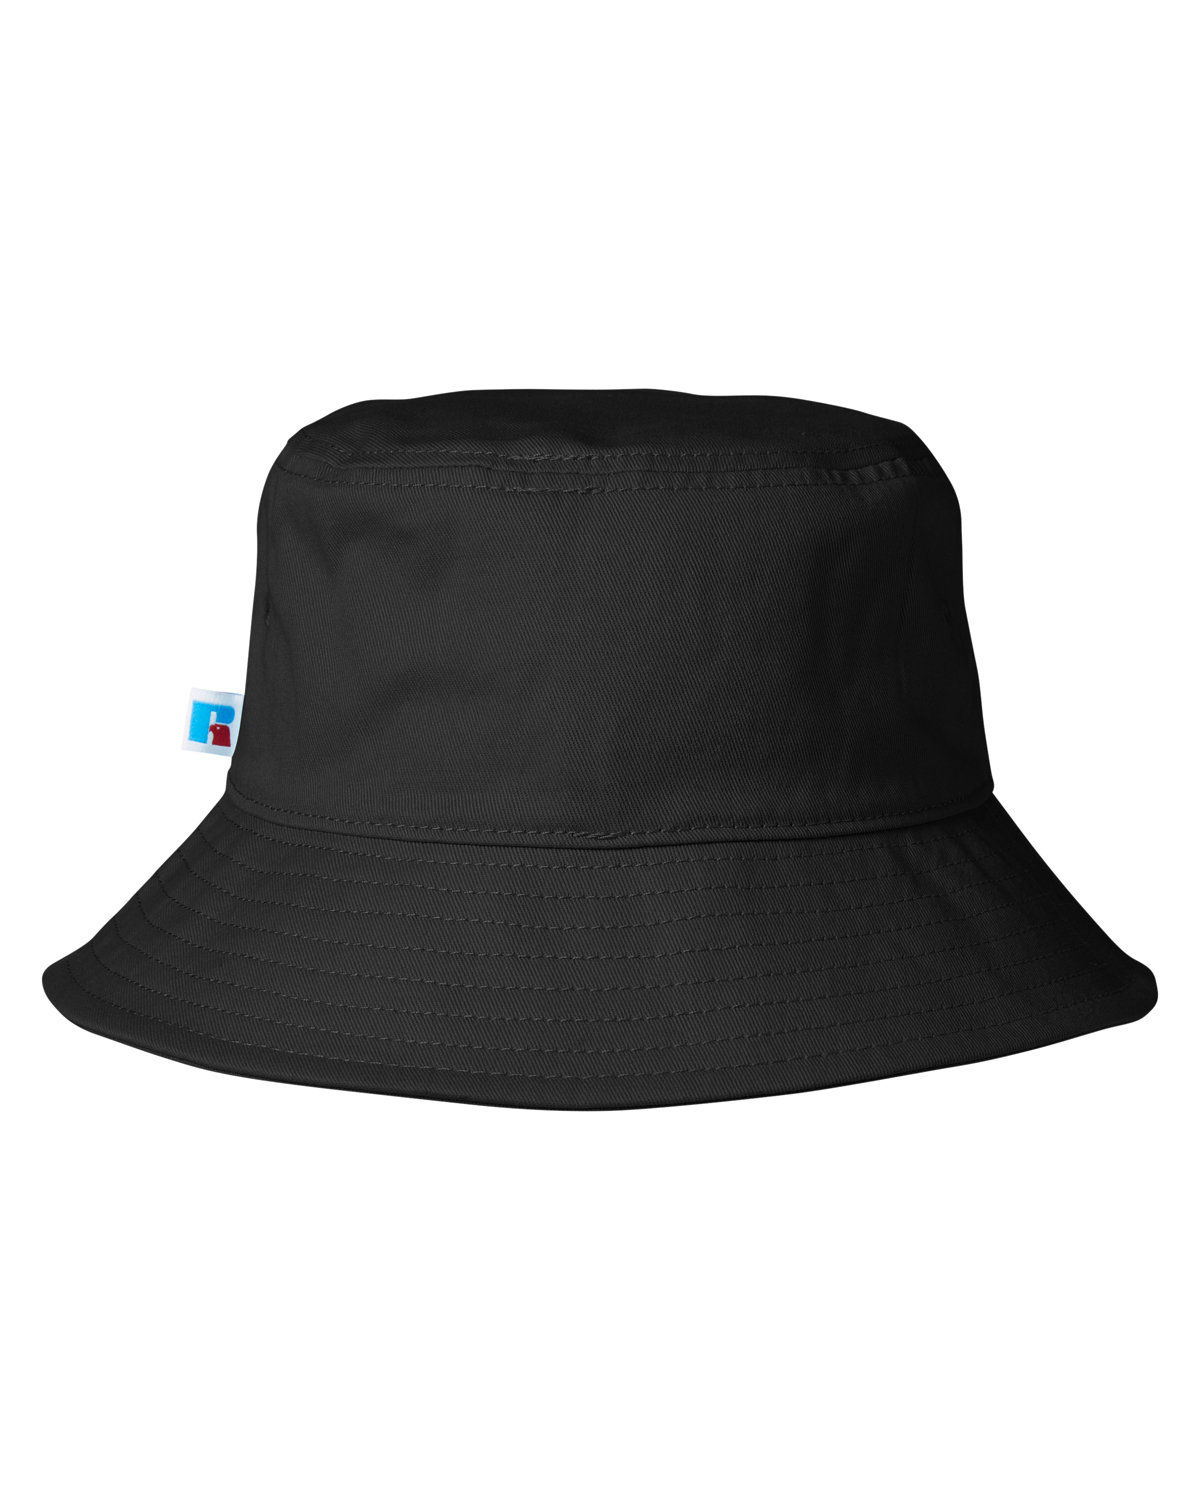 Custom Bucket Hats, Order and Design Online